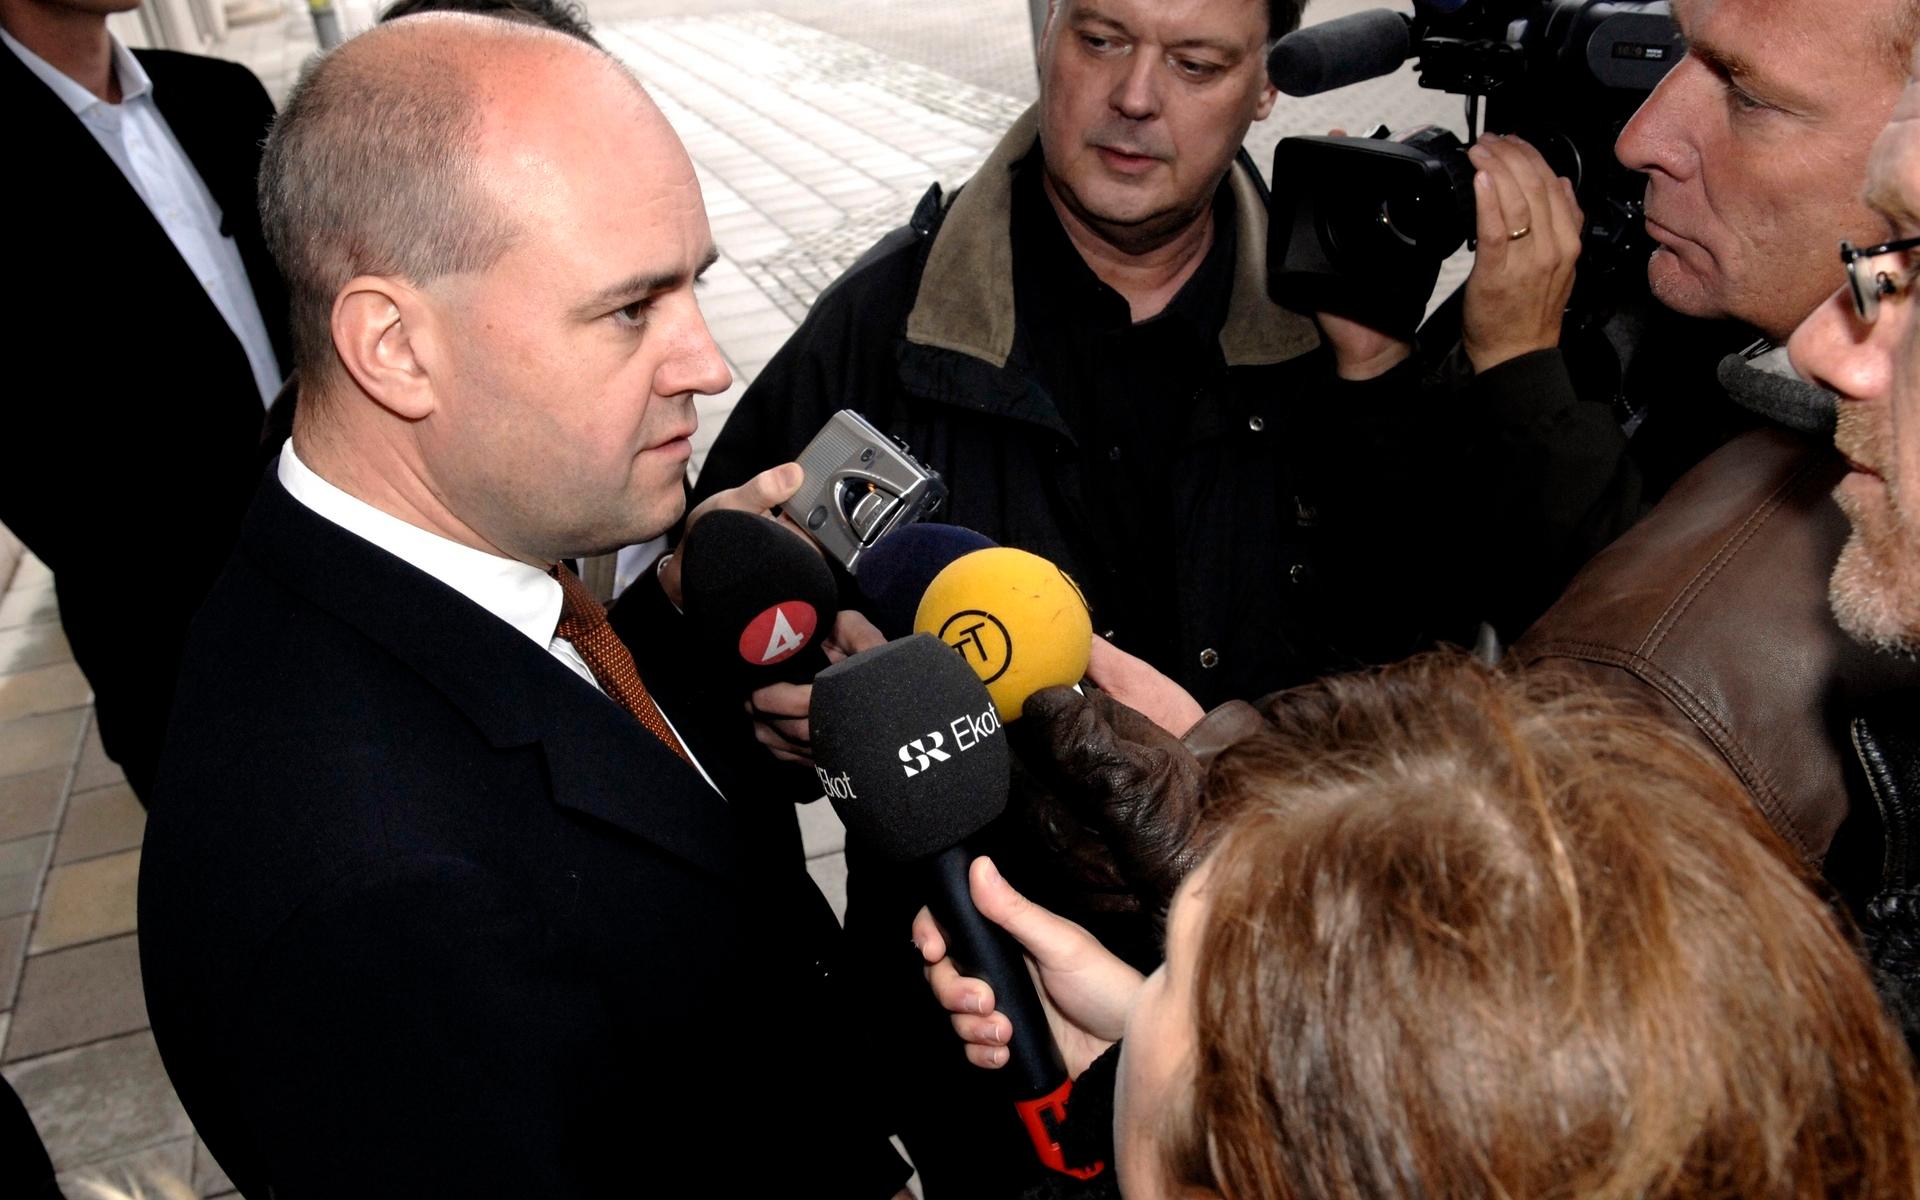 Vilks kontroversiella karikatyr gjorde avtryck även politiskt. Här ett uttalande av dåvarande statsminister Fredrik Reinfeldt, efter att terrorgruppen al-Qaida uttalat hot mot bland annat Lars Vilks.